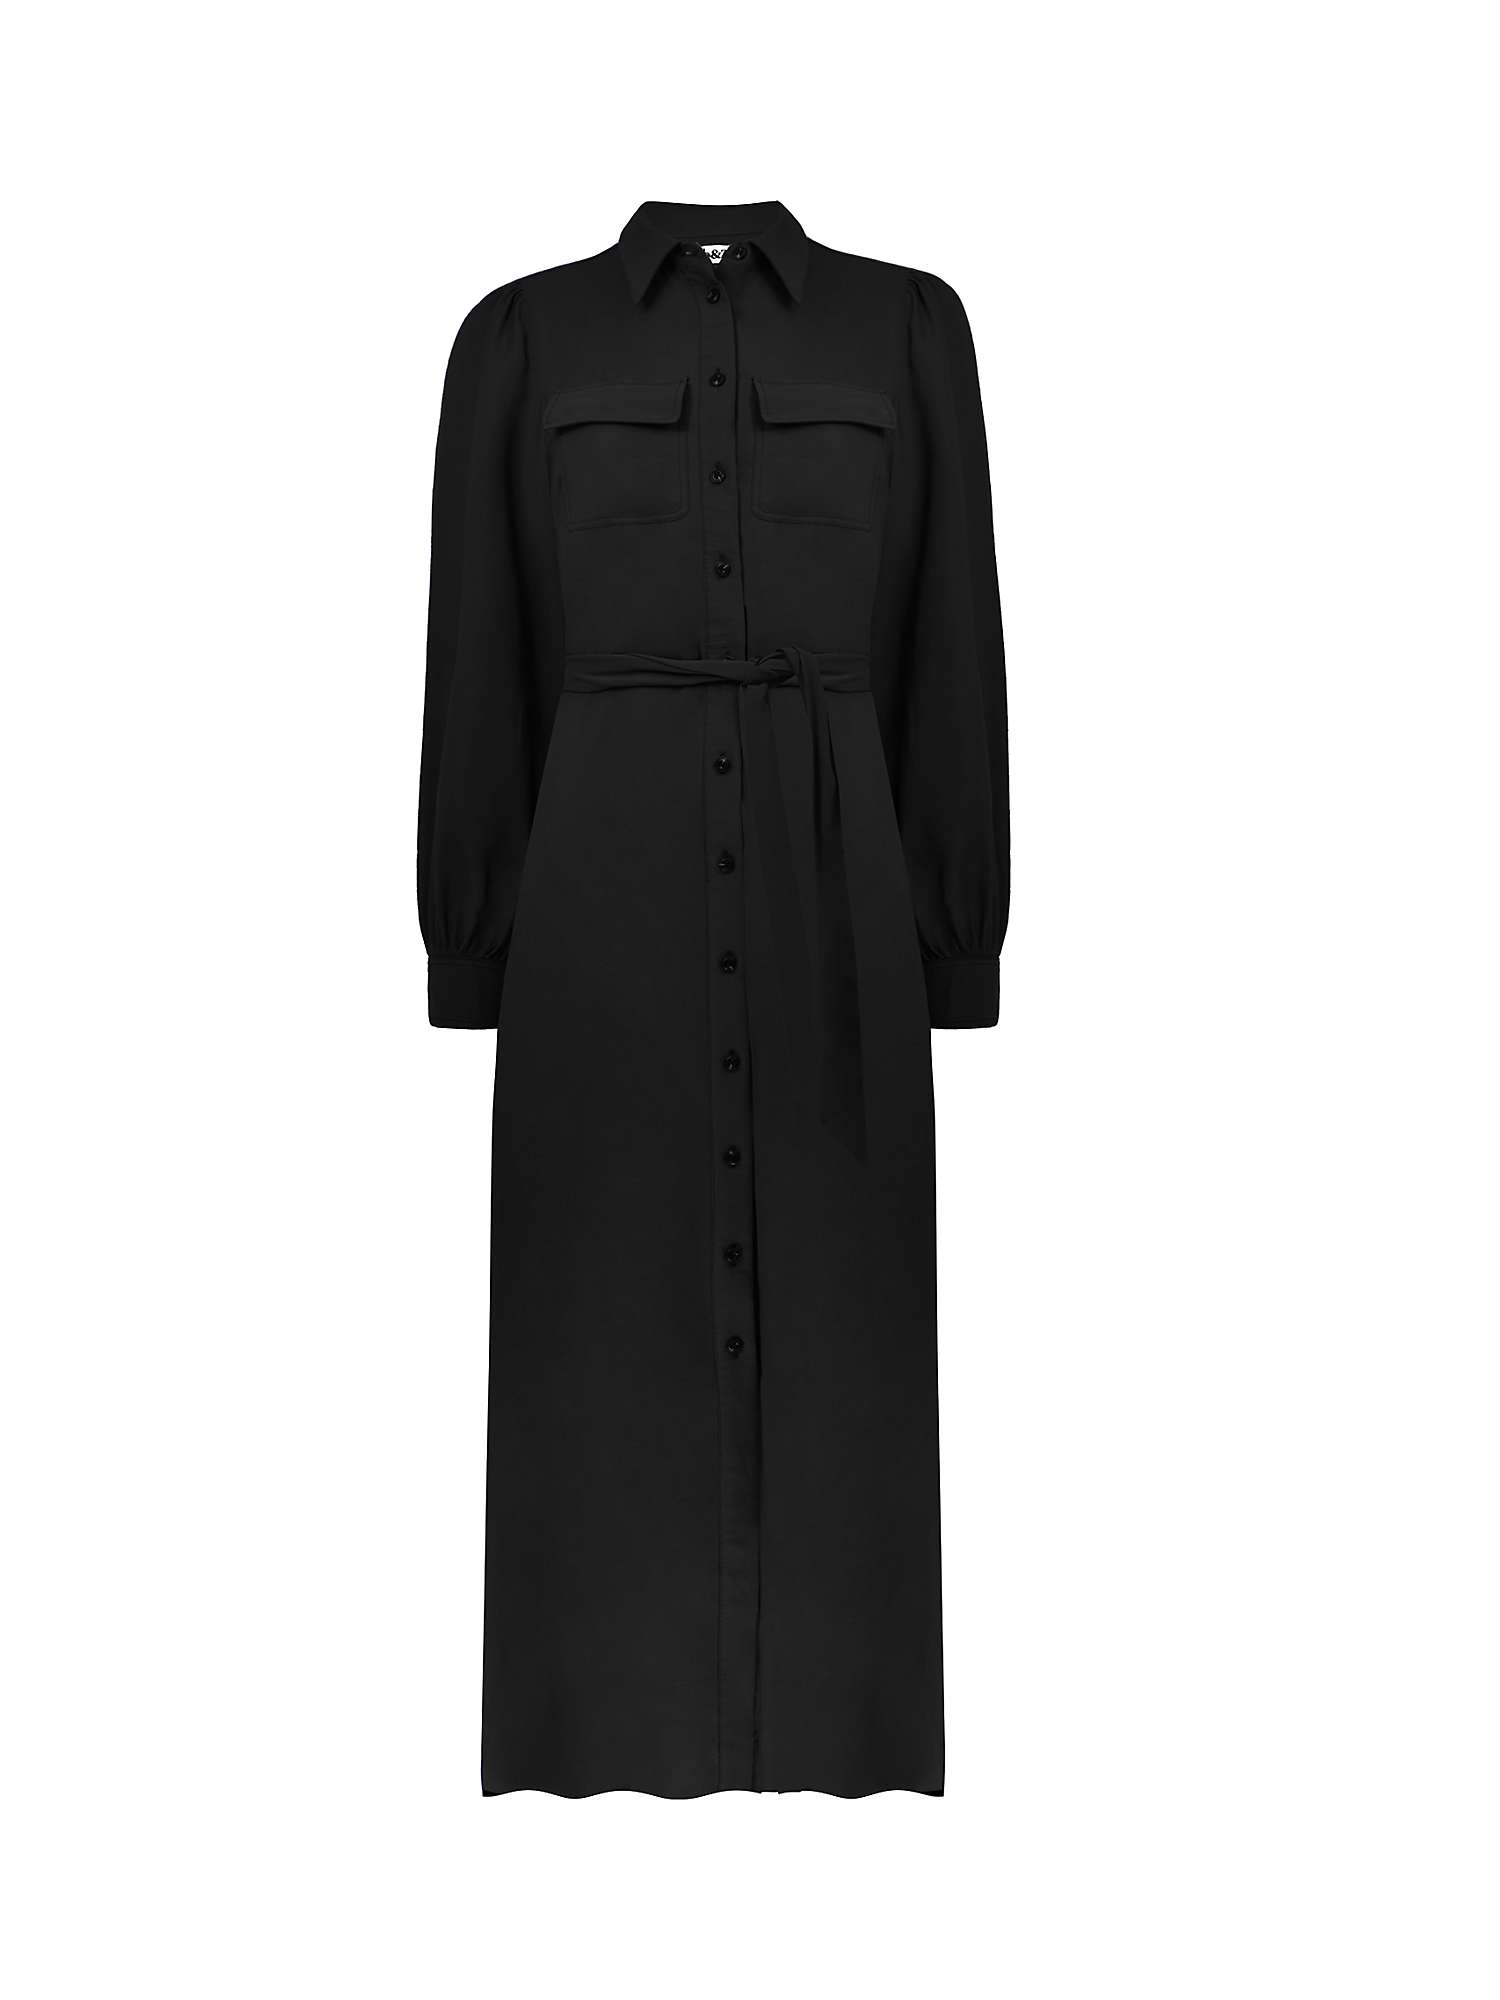 Ro&Zo Petite Modal Pocket Detail Shirt Dress, Black at John Lewis ...